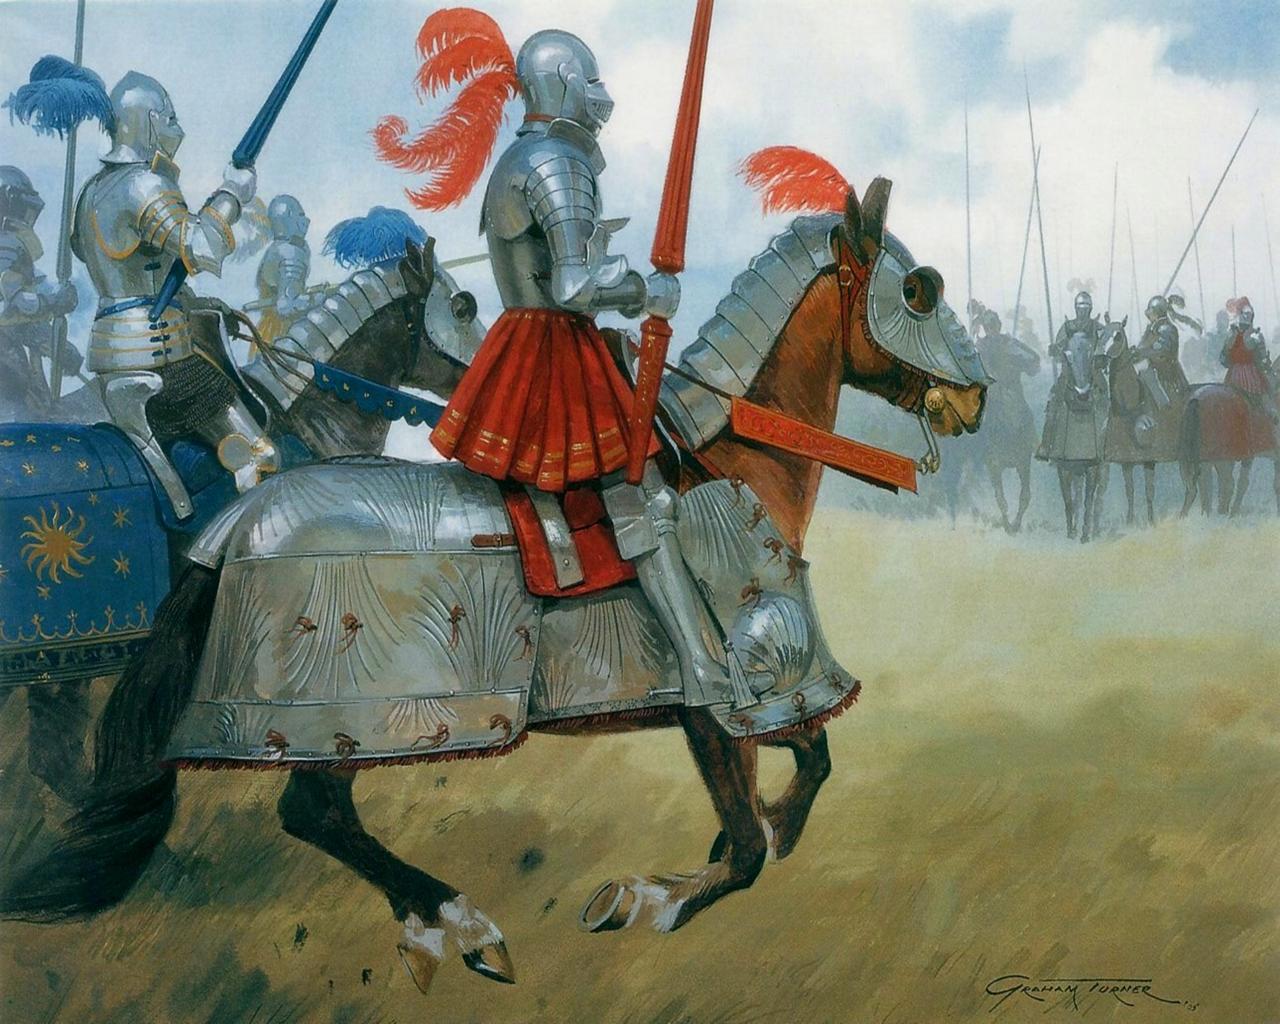 Фотография Knights Рыцарь в доспехах на коне в доспехах Живопись